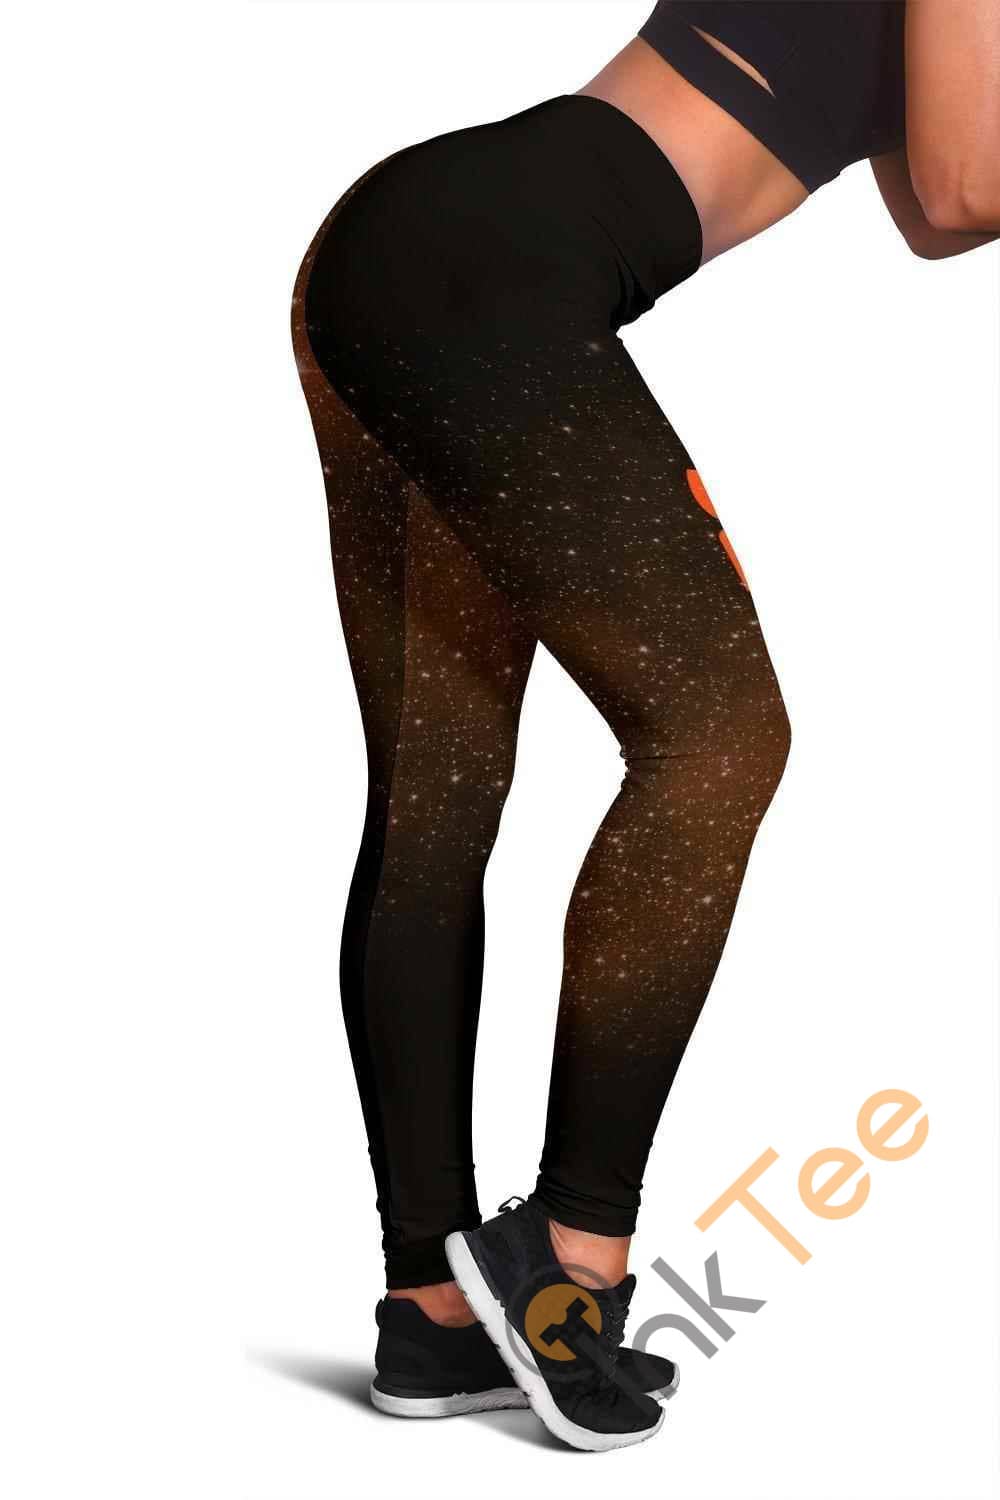 Inktee Store - Chicago Bears 3D All Over Print For Yoga Fitness Women'S Leggings Image